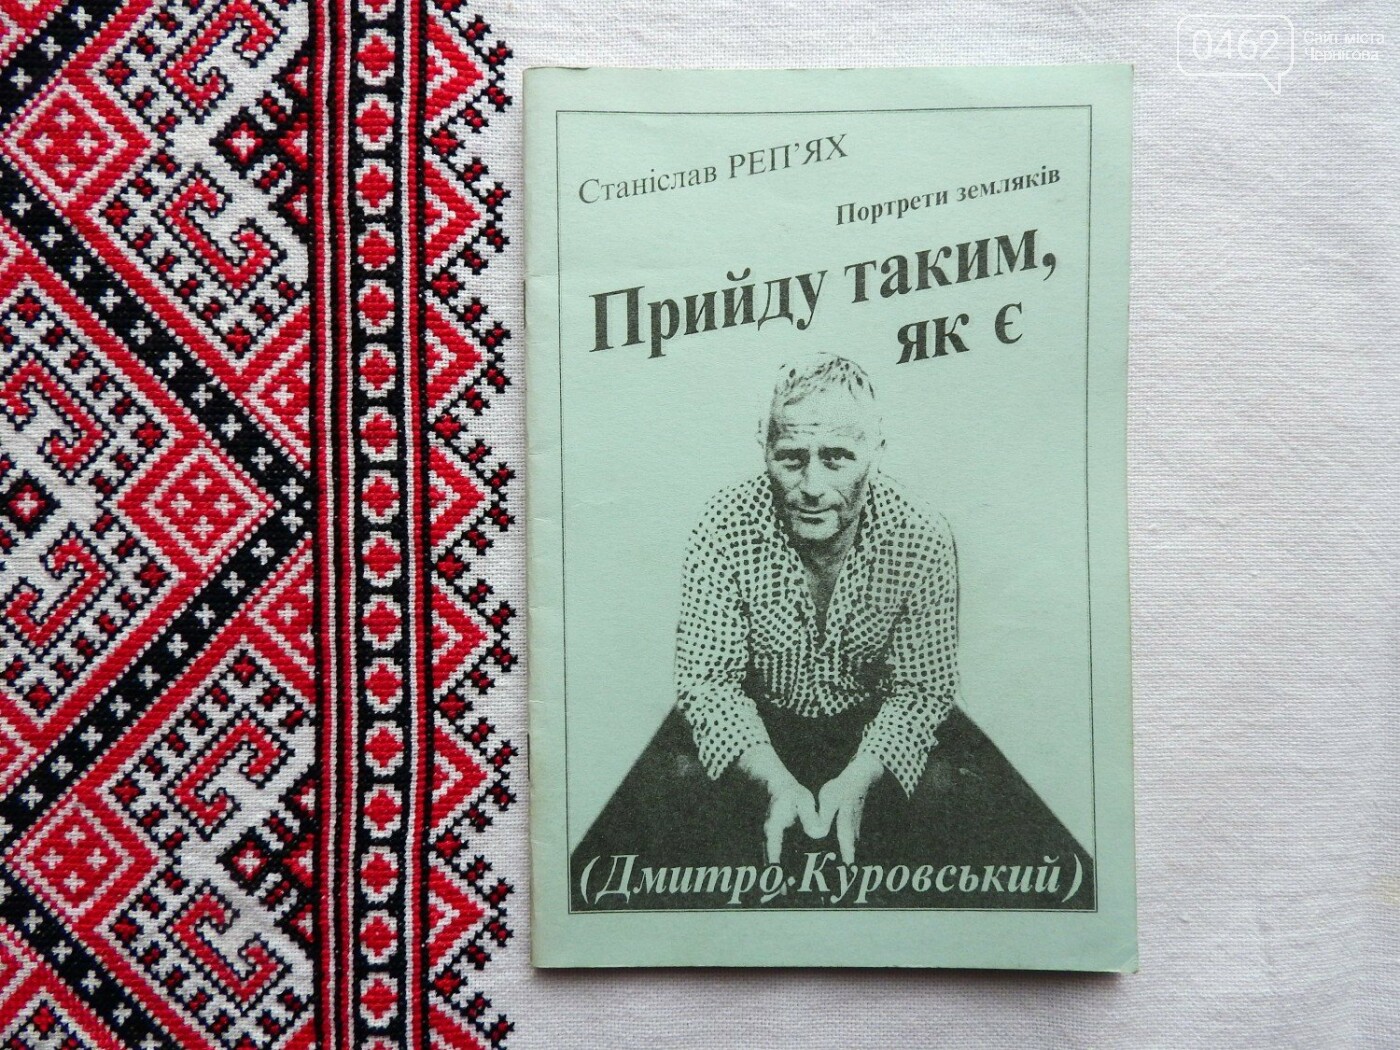 Книга Дмитра Куровського "Прийду таким, як є" вийшла вже після смерті поета